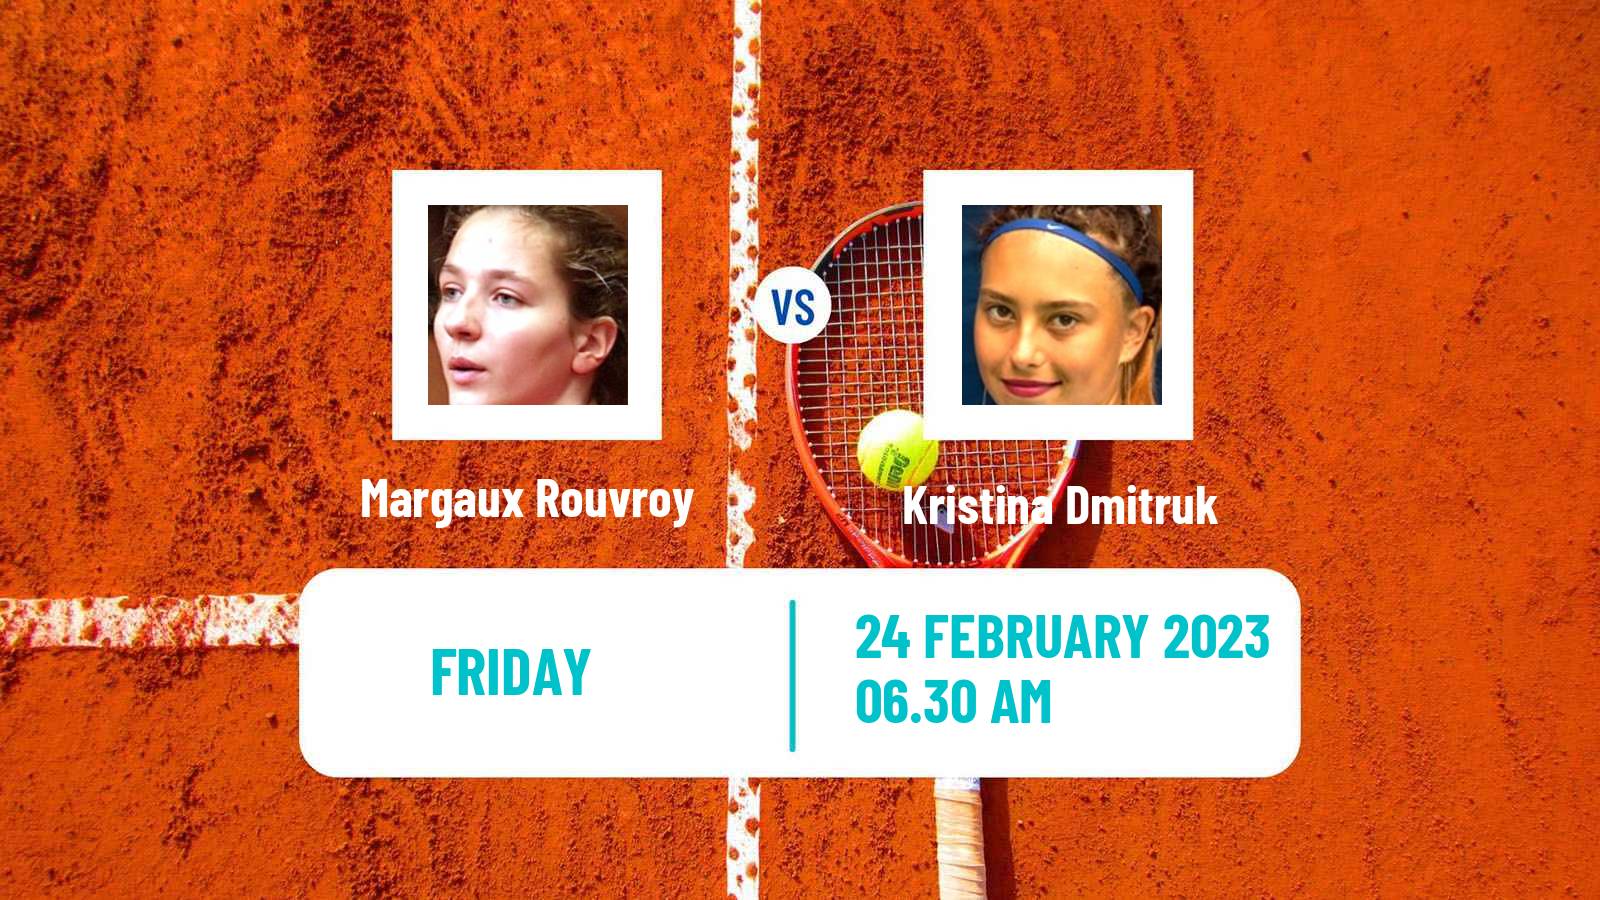 Tennis ITF Tournaments Margaux Rouvroy - Kristina Dmitruk